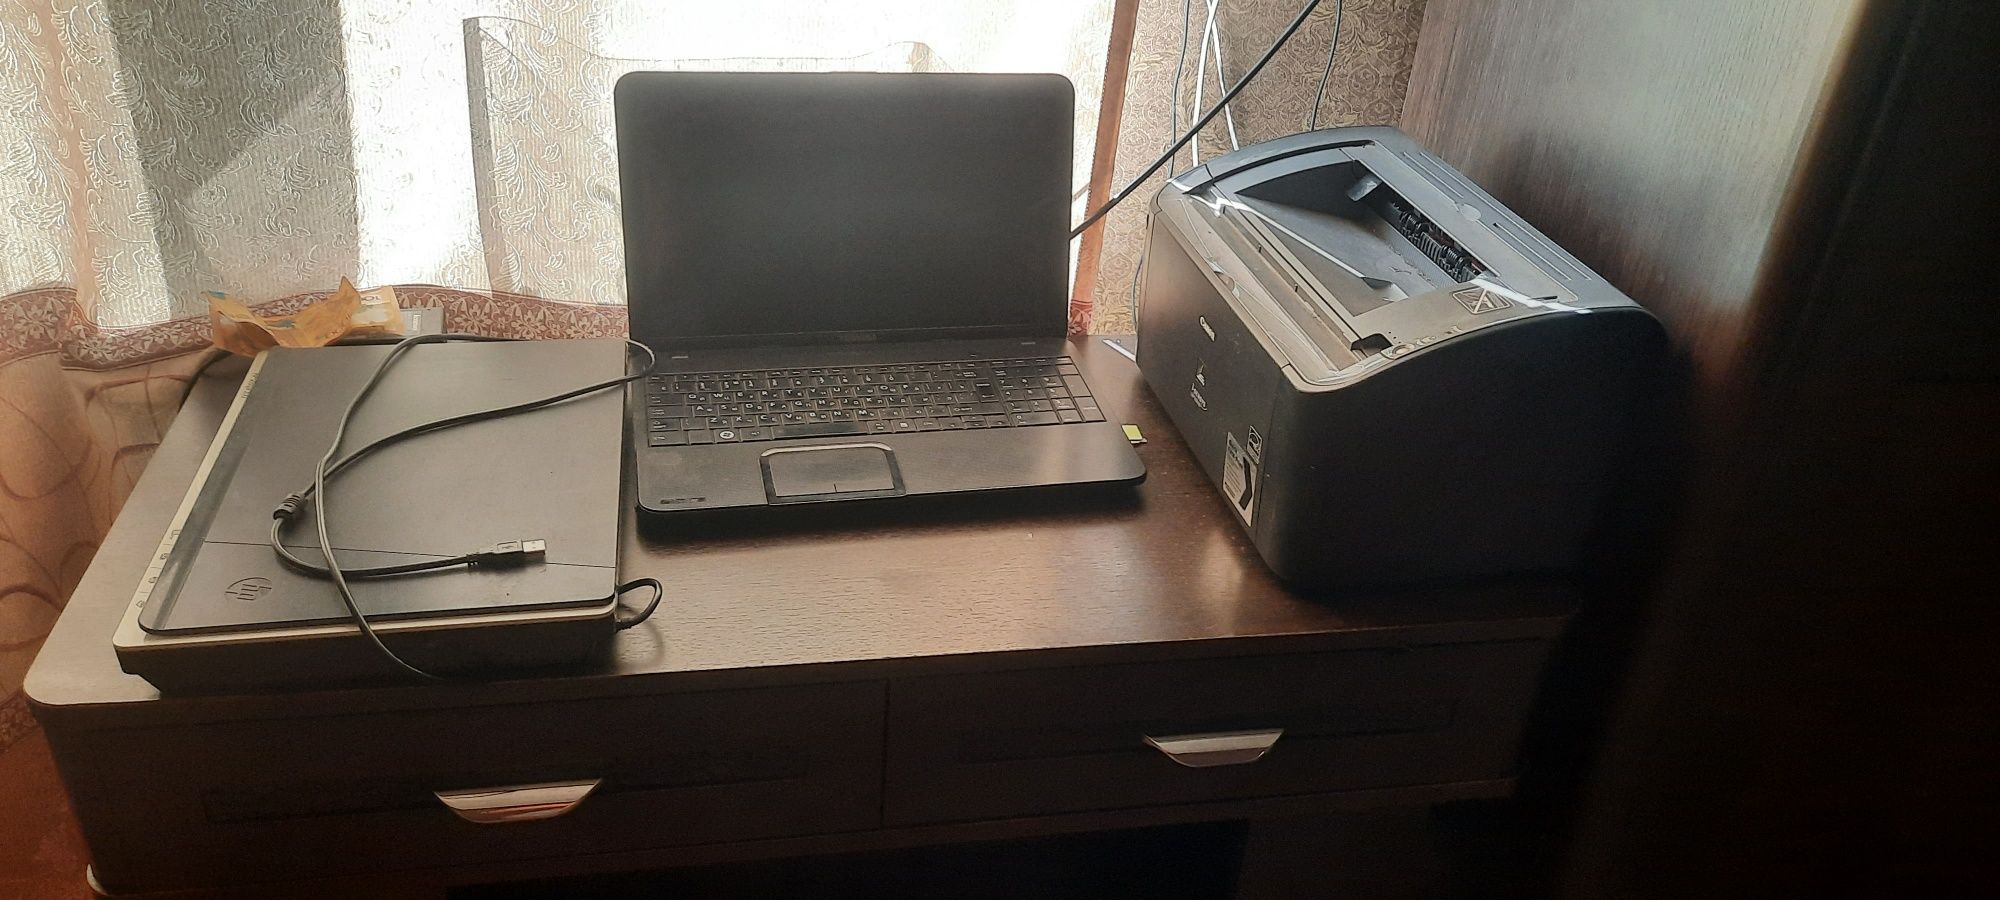 Комплект ноутбук,сканер планшетный